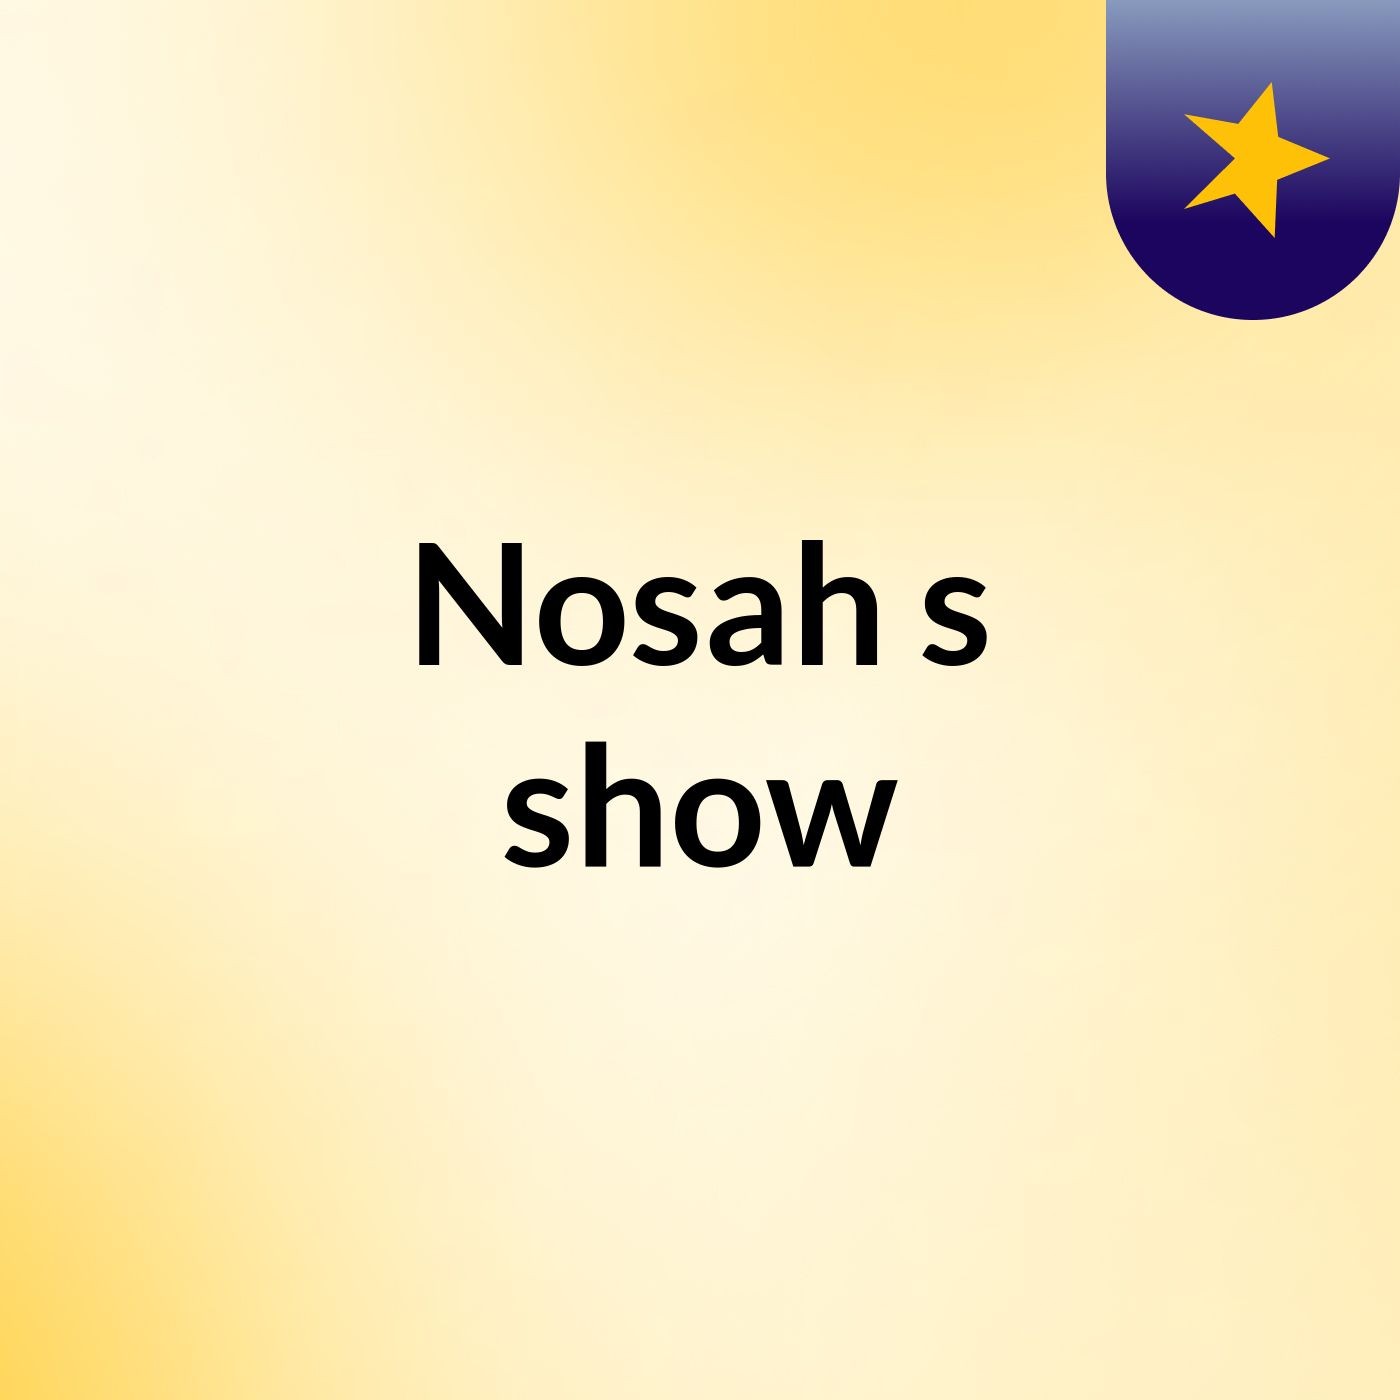 Nosah's show